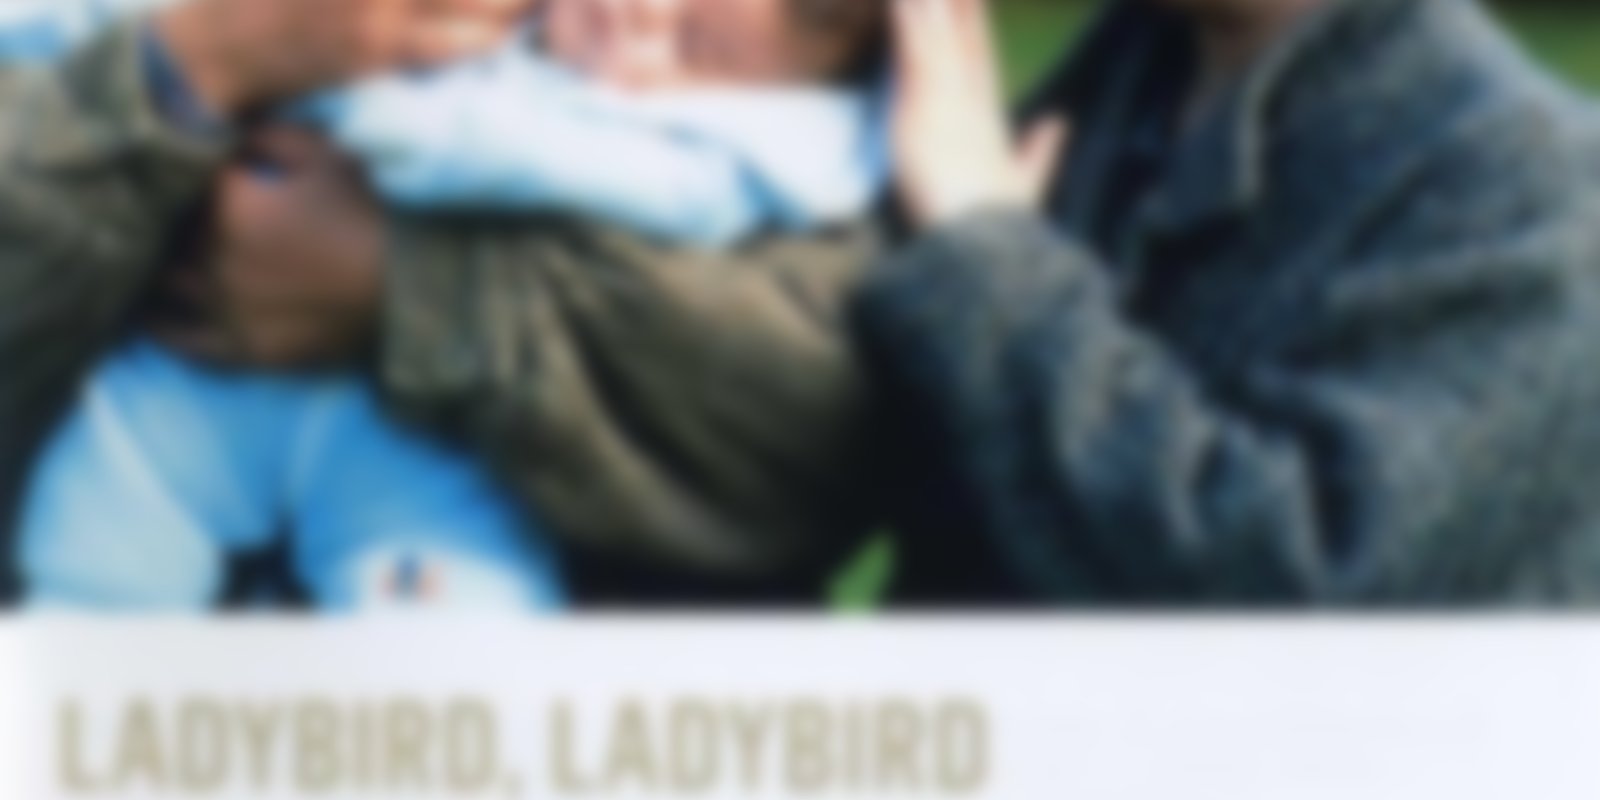 Ladybird, Ladybird